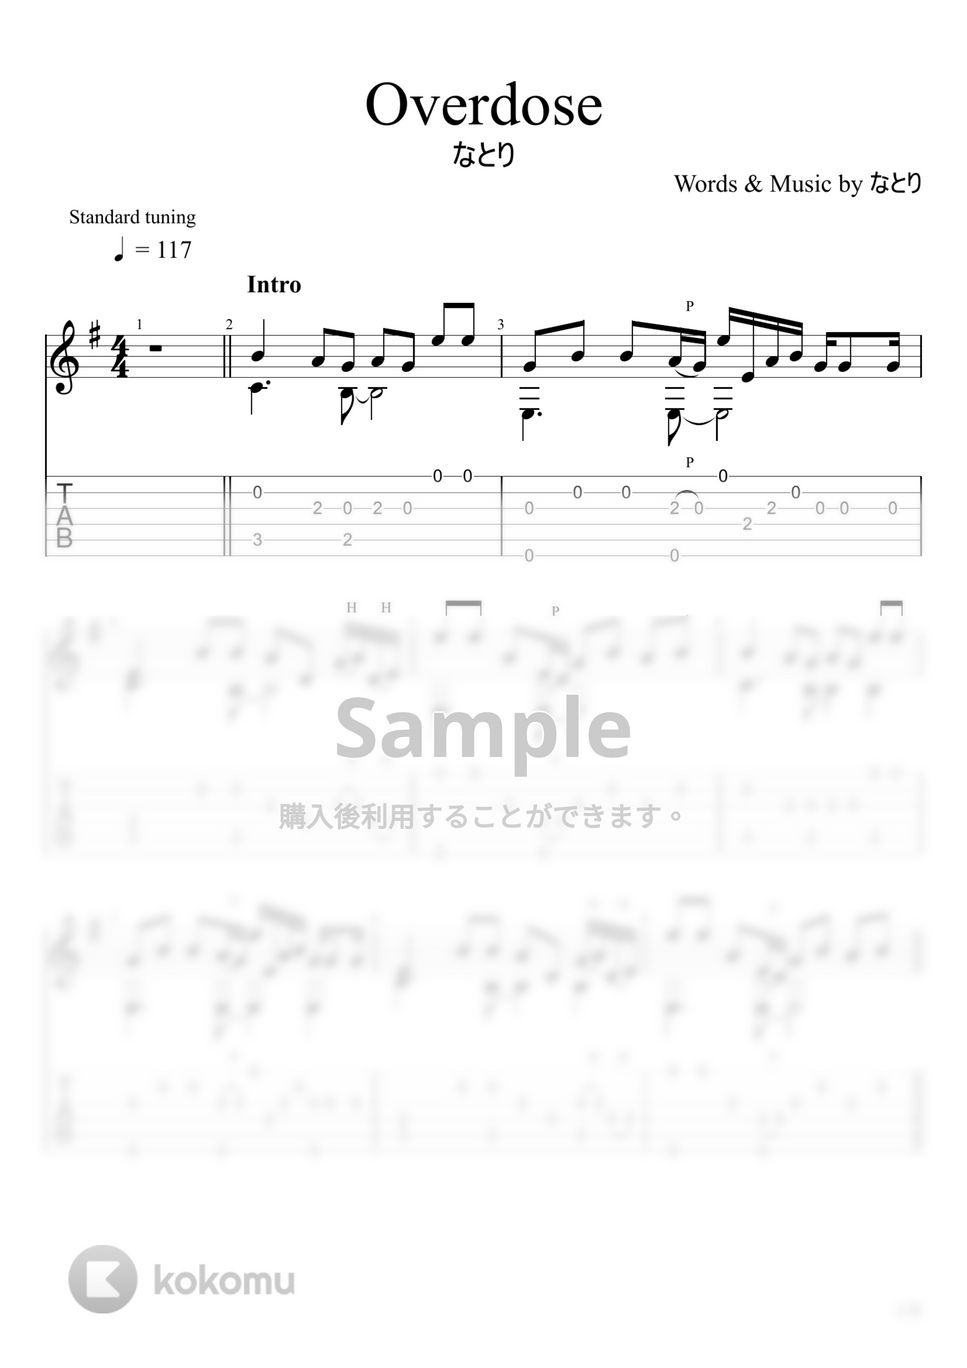 なとり - Overdose (ソロギター) by u3danchou